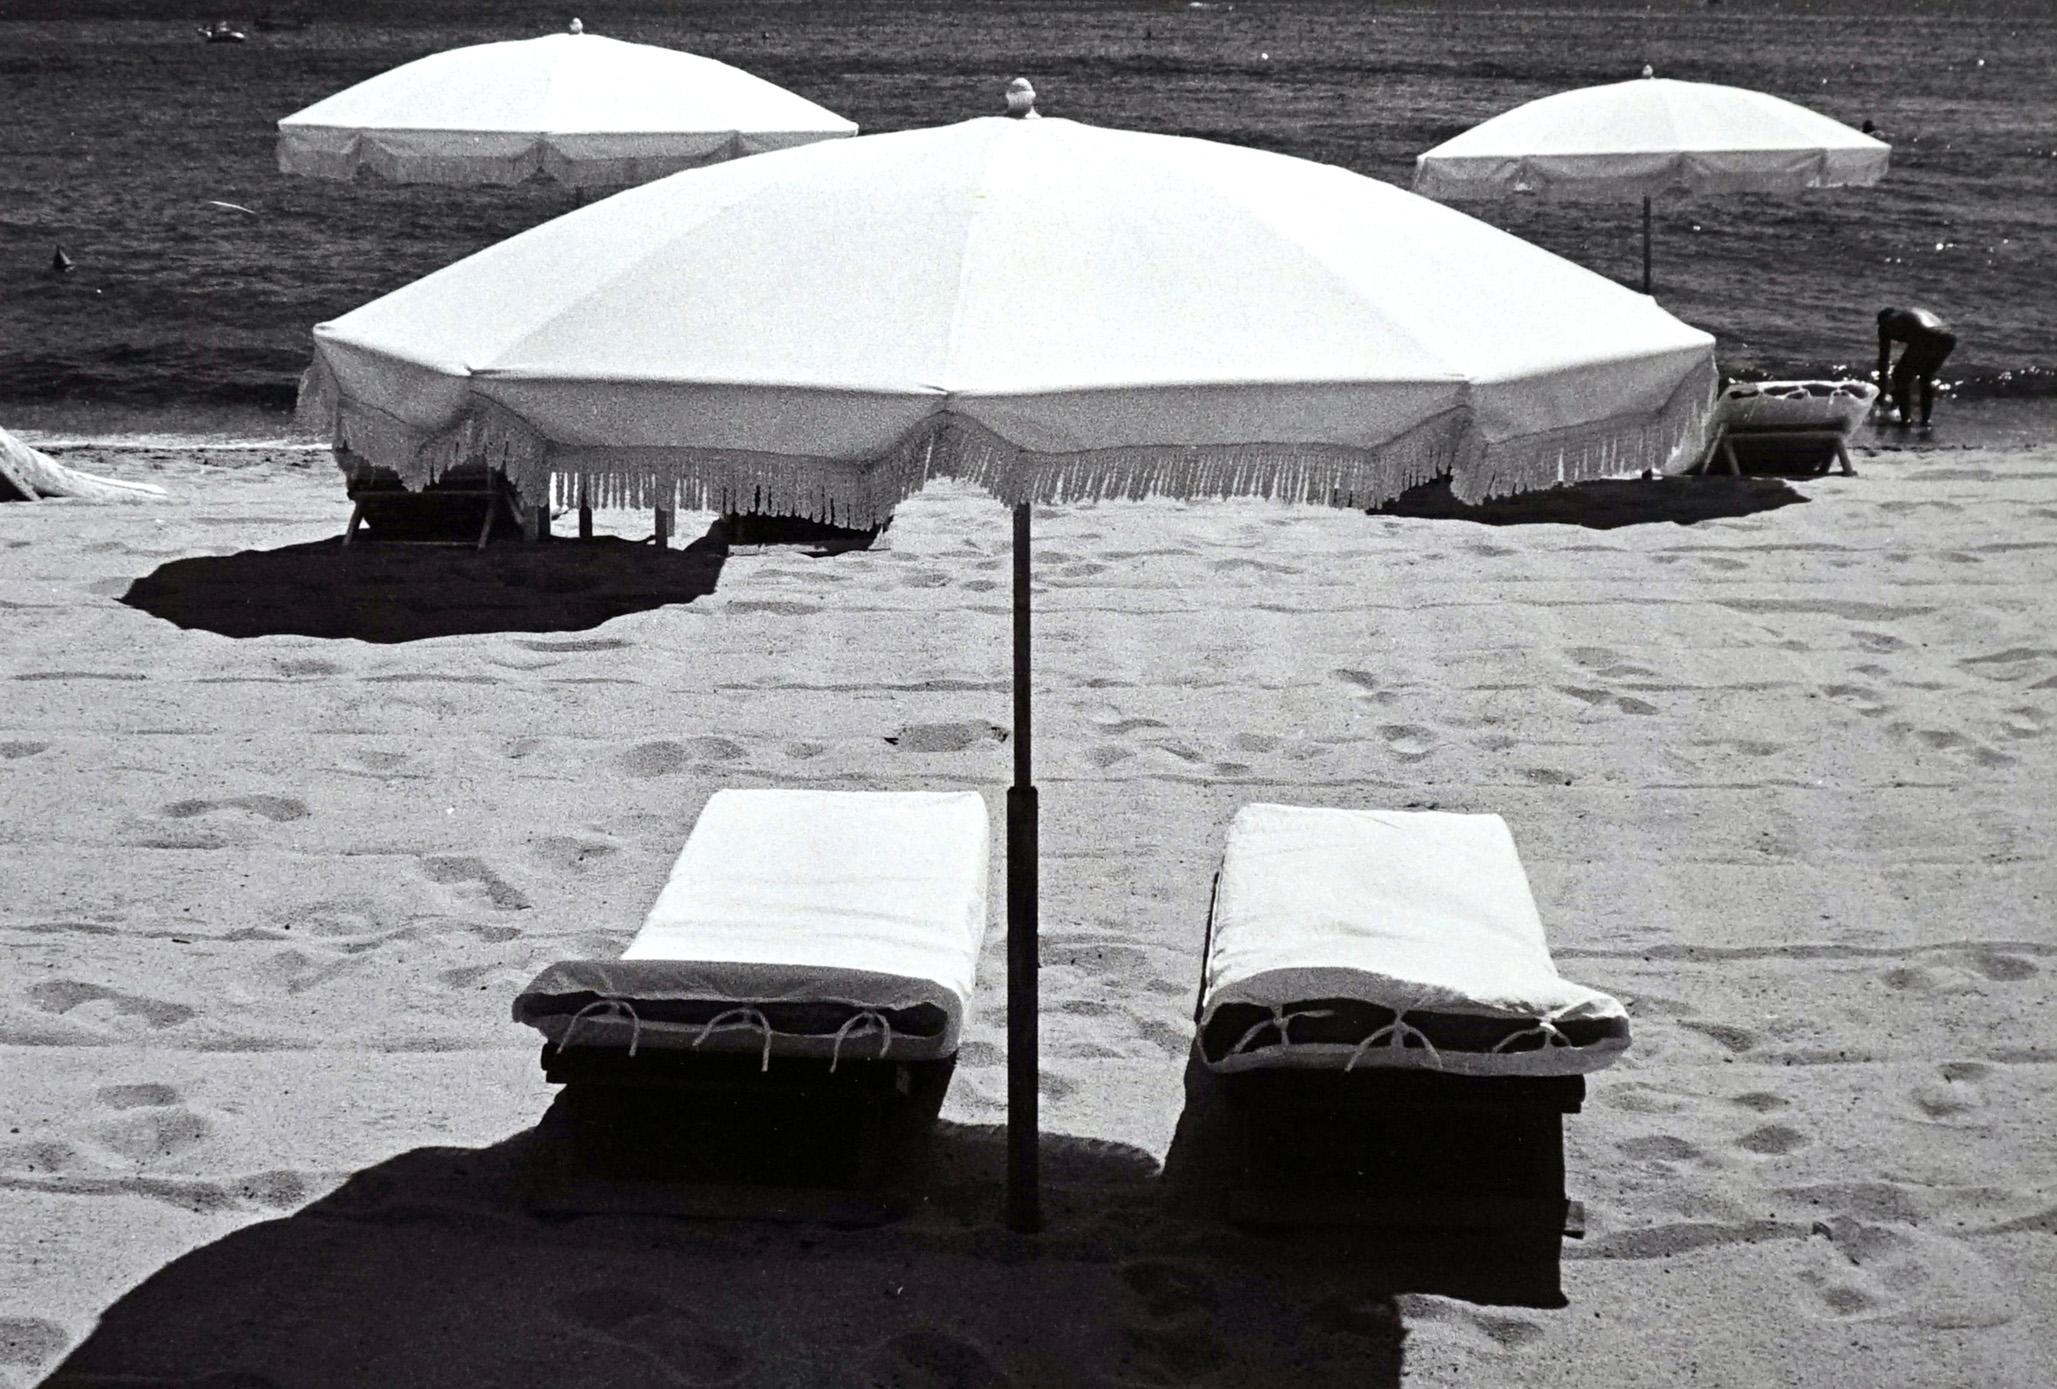 Black and White Photograph Jörg Krichbaum - Rivages - Off-Print # 1 - St Tropez - Photographie minimaliste en noir et blanc